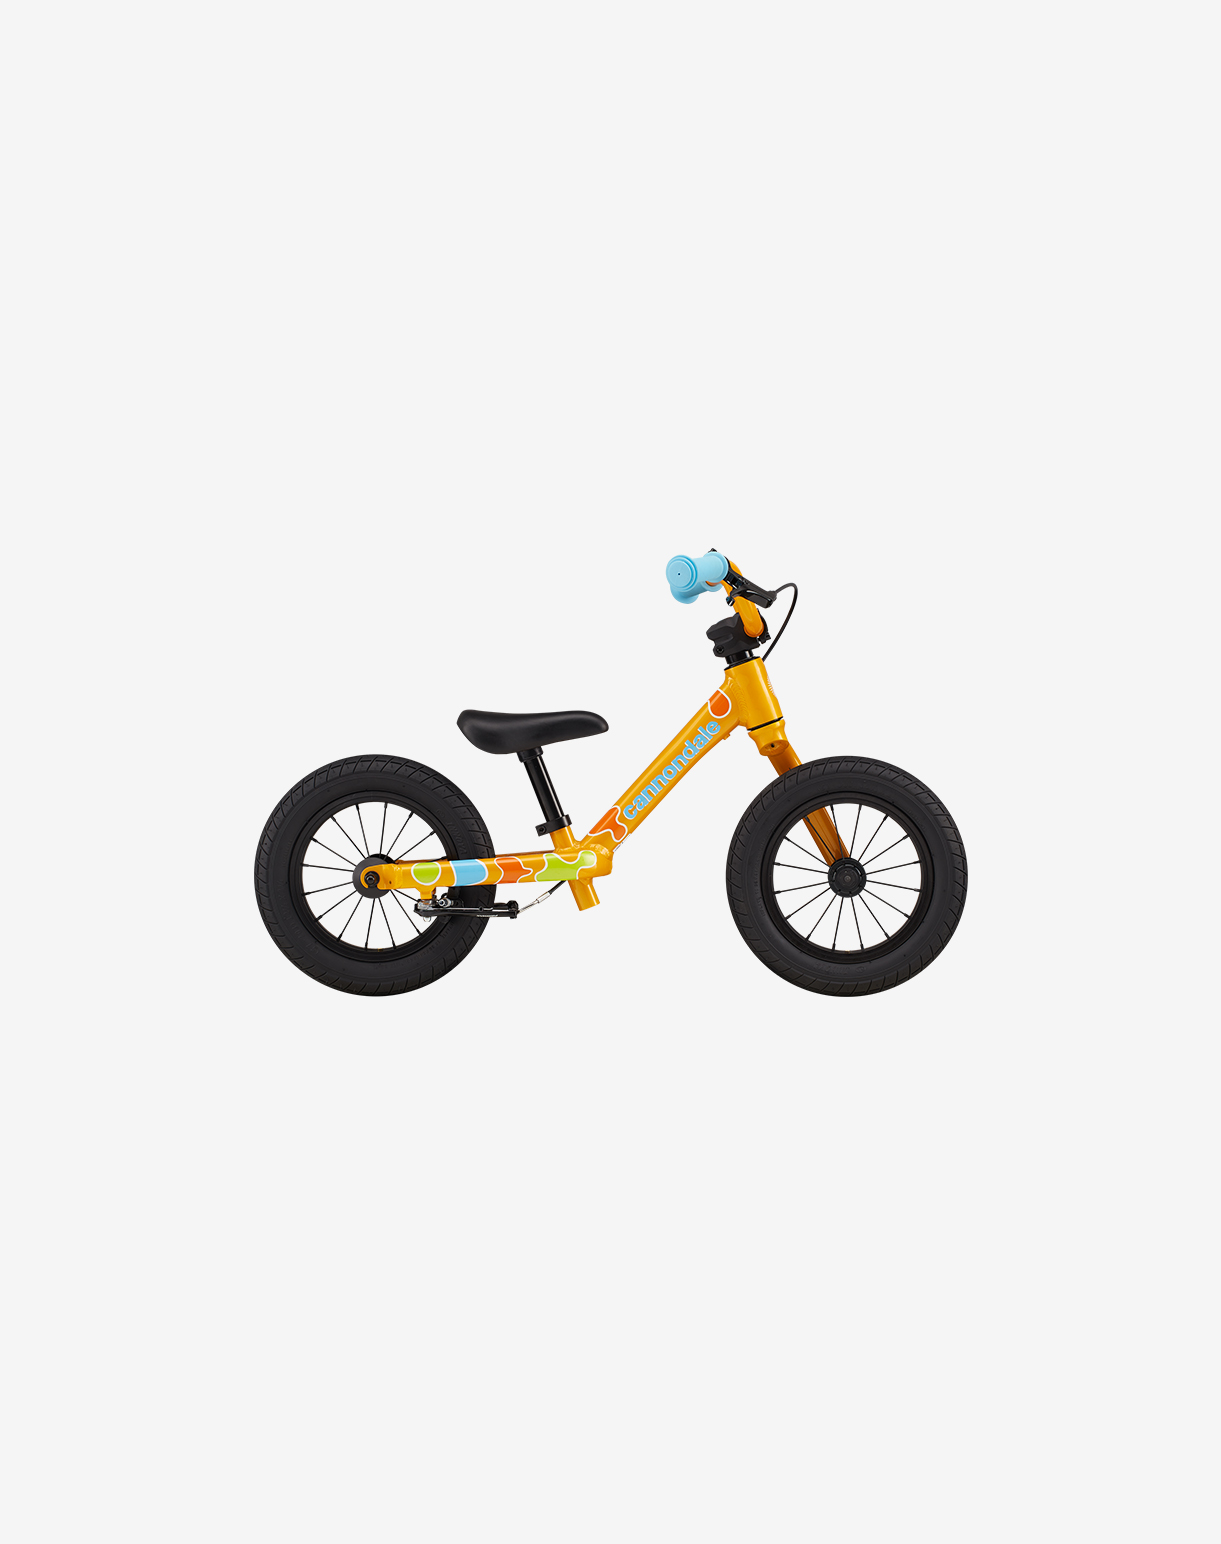 Guide d'achat vélo enfant 3 à 12 ans - Quel velo ?